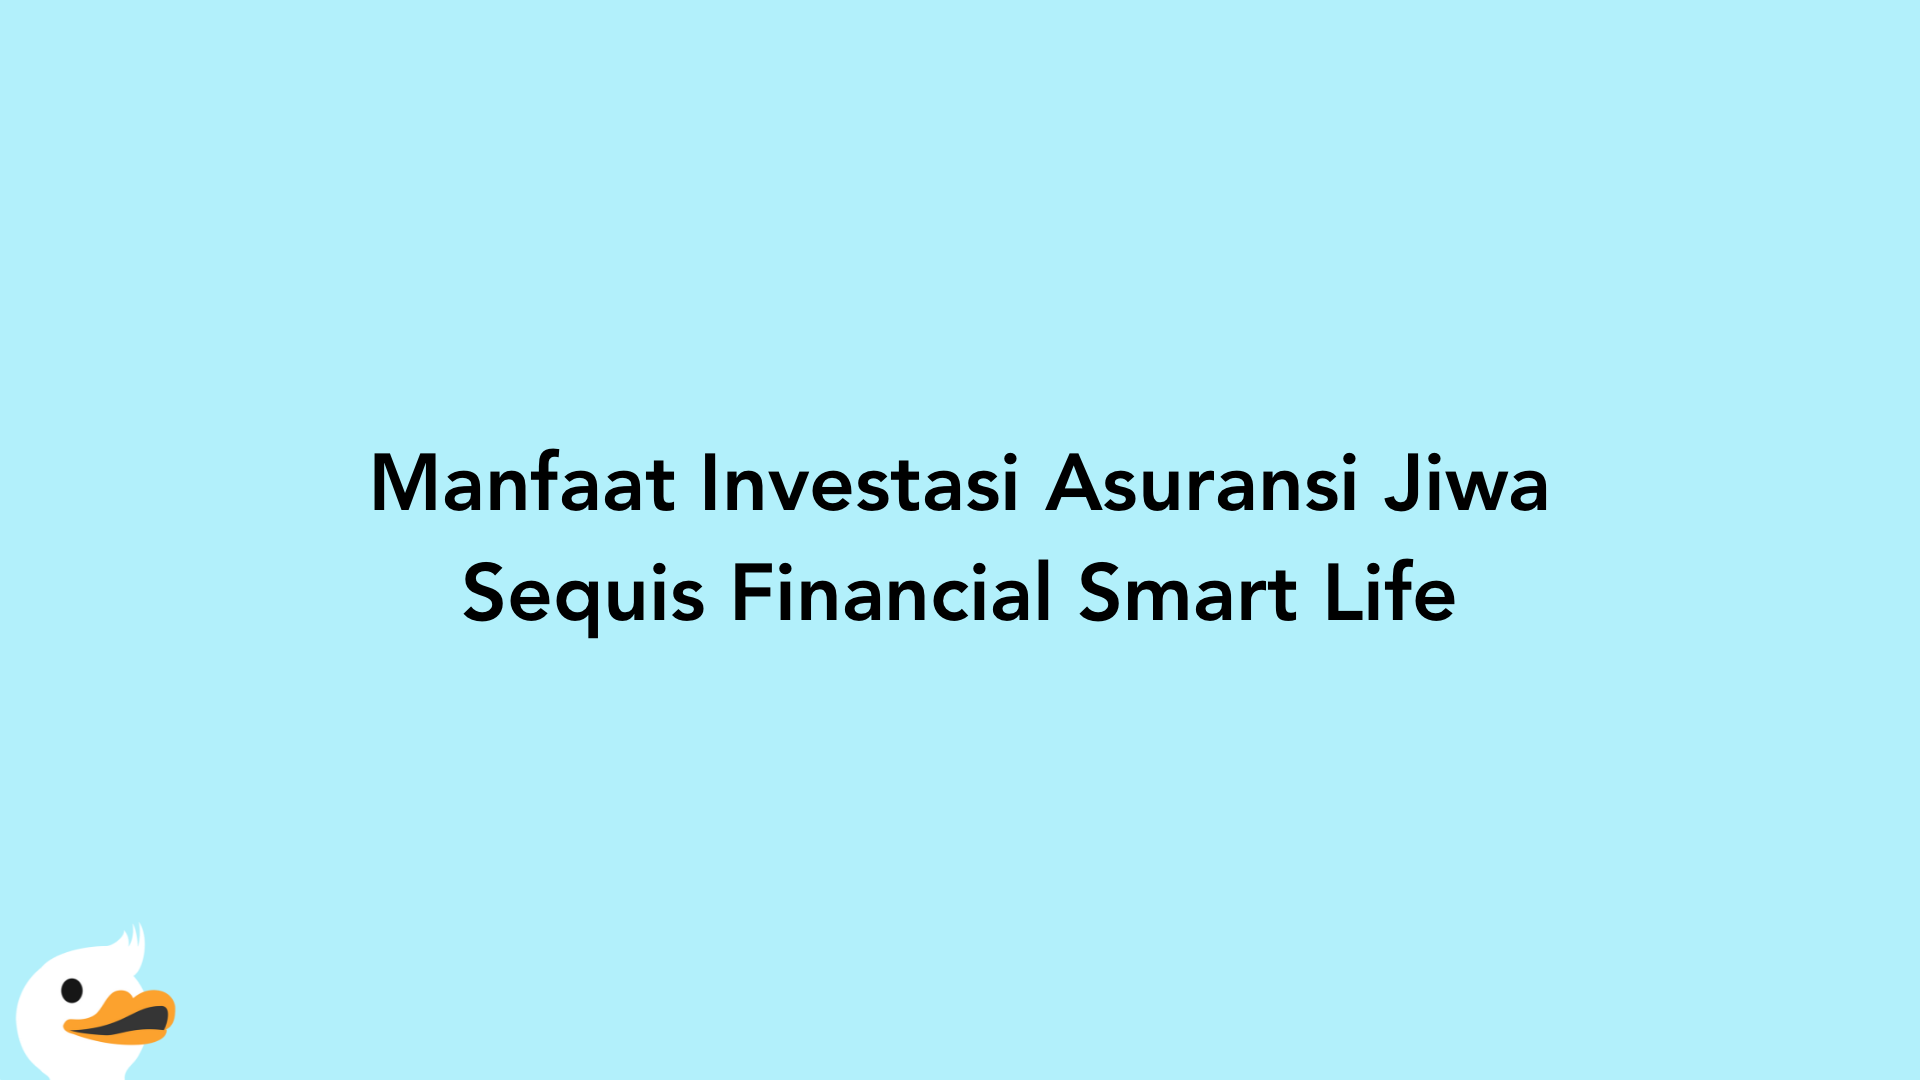 Manfaat Investasi Asuransi Jiwa Sequis Financial Smart Life